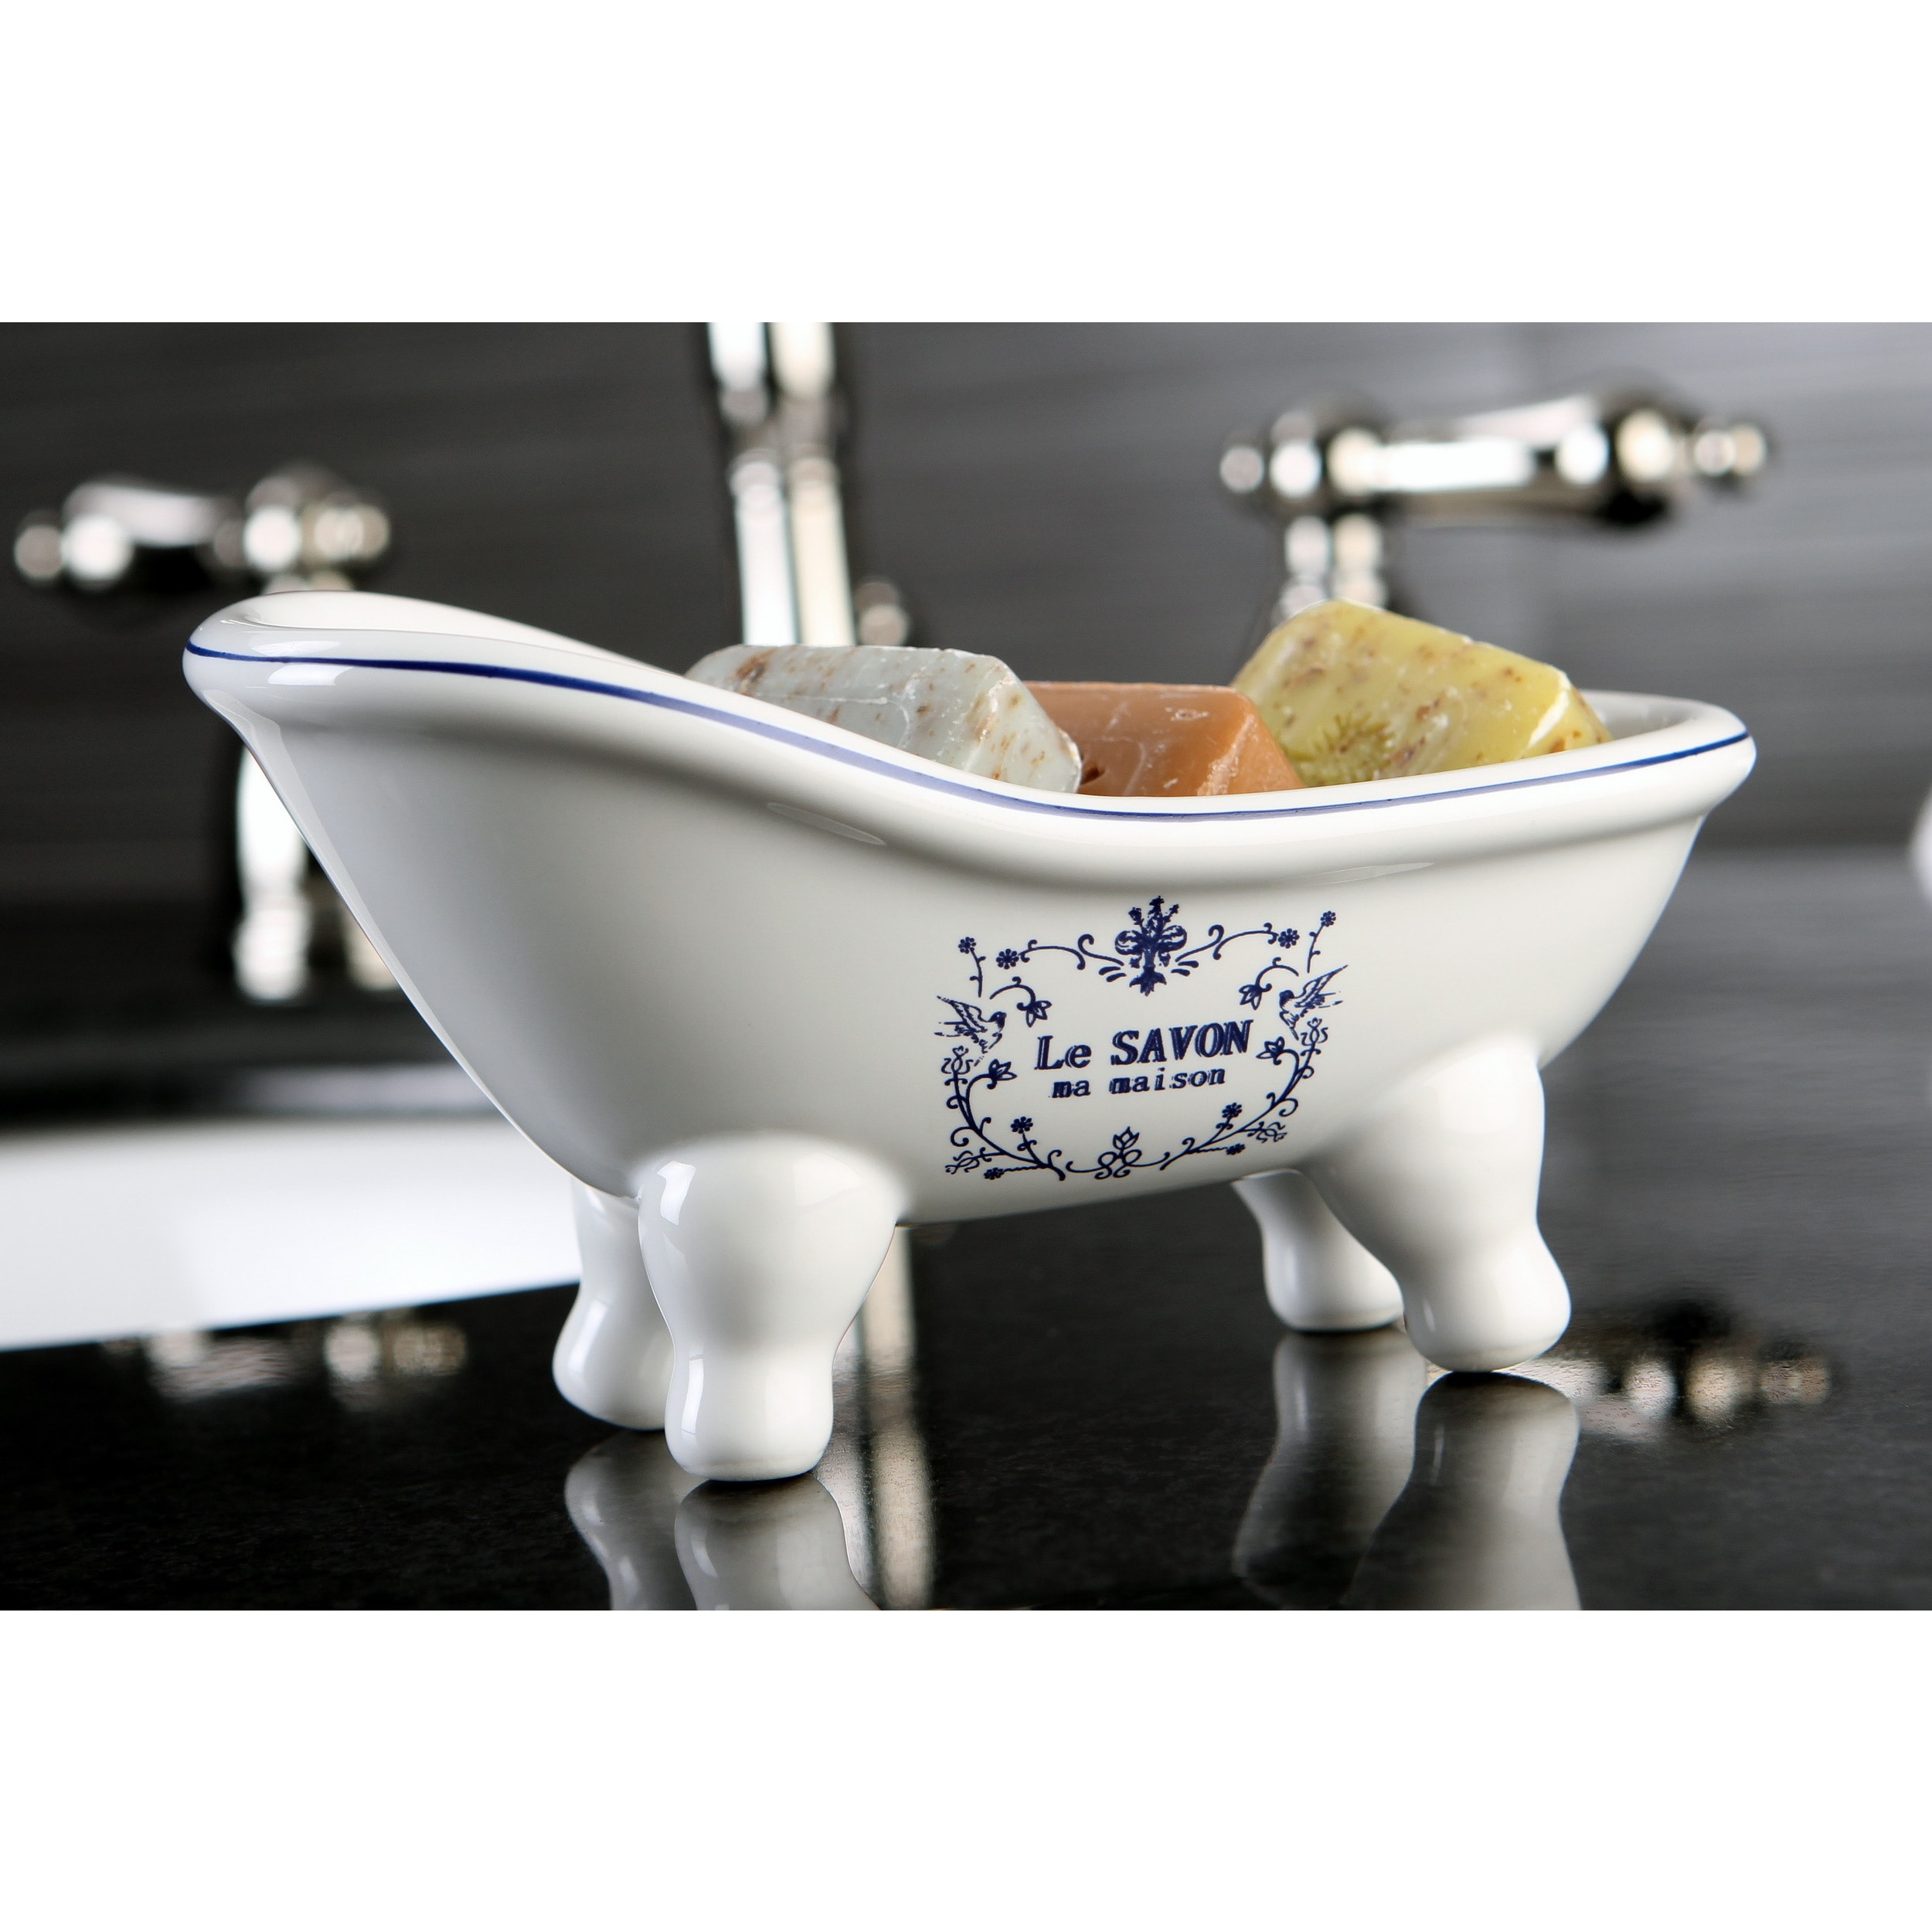 Le Savon Slipper Clawfoot Tub Soap Dish - Blue/White